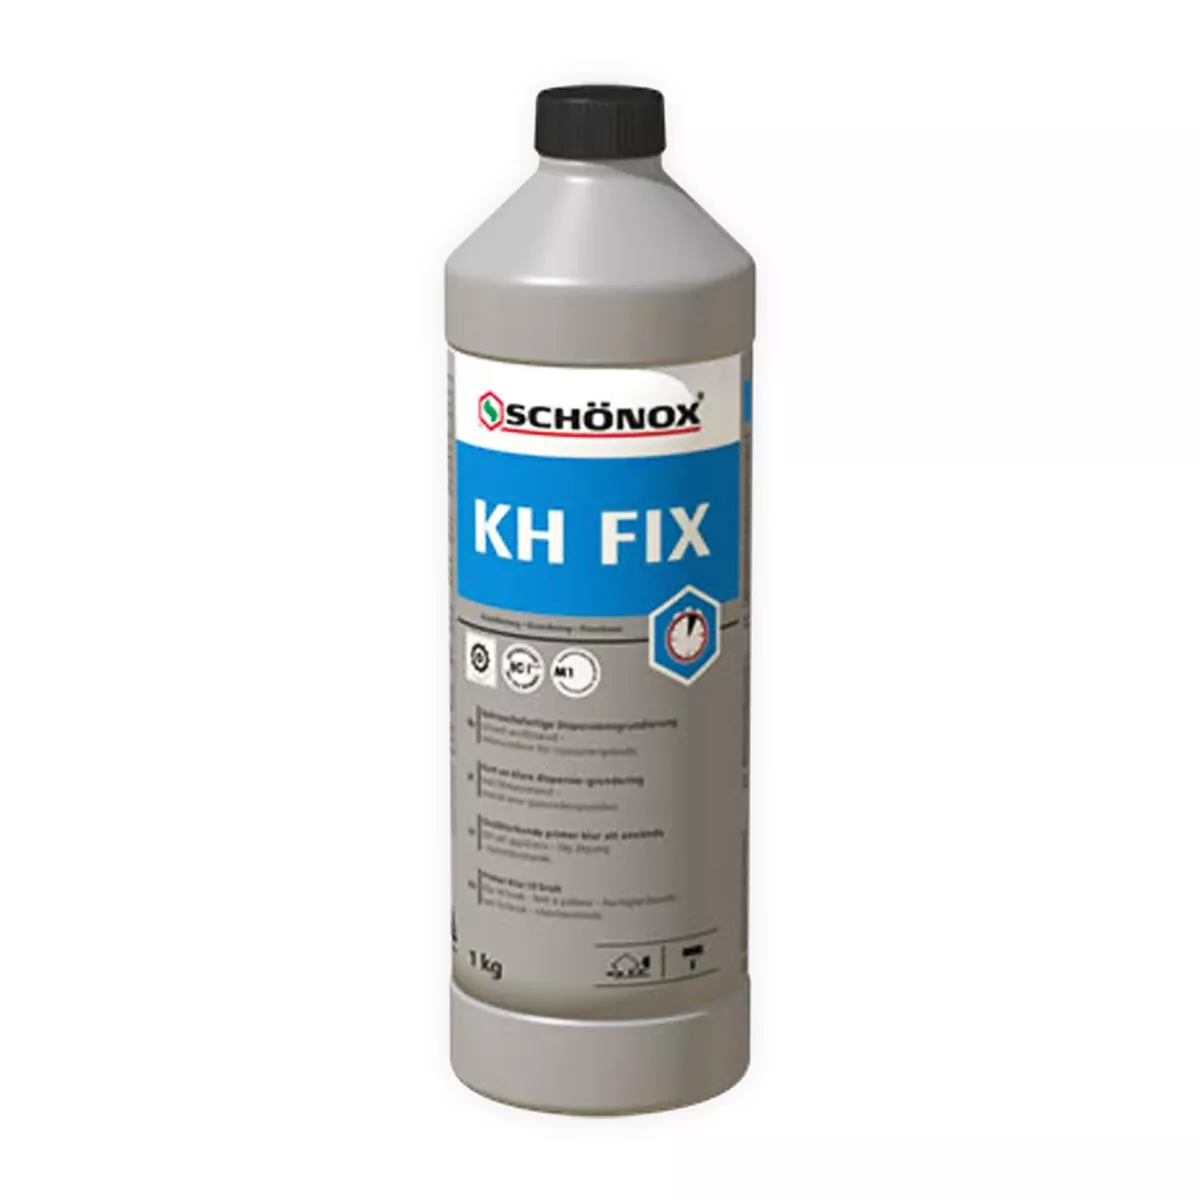 Primer Pronto para usar Schönox KH FIX dispersão adesiva de resina sintética 1 kg